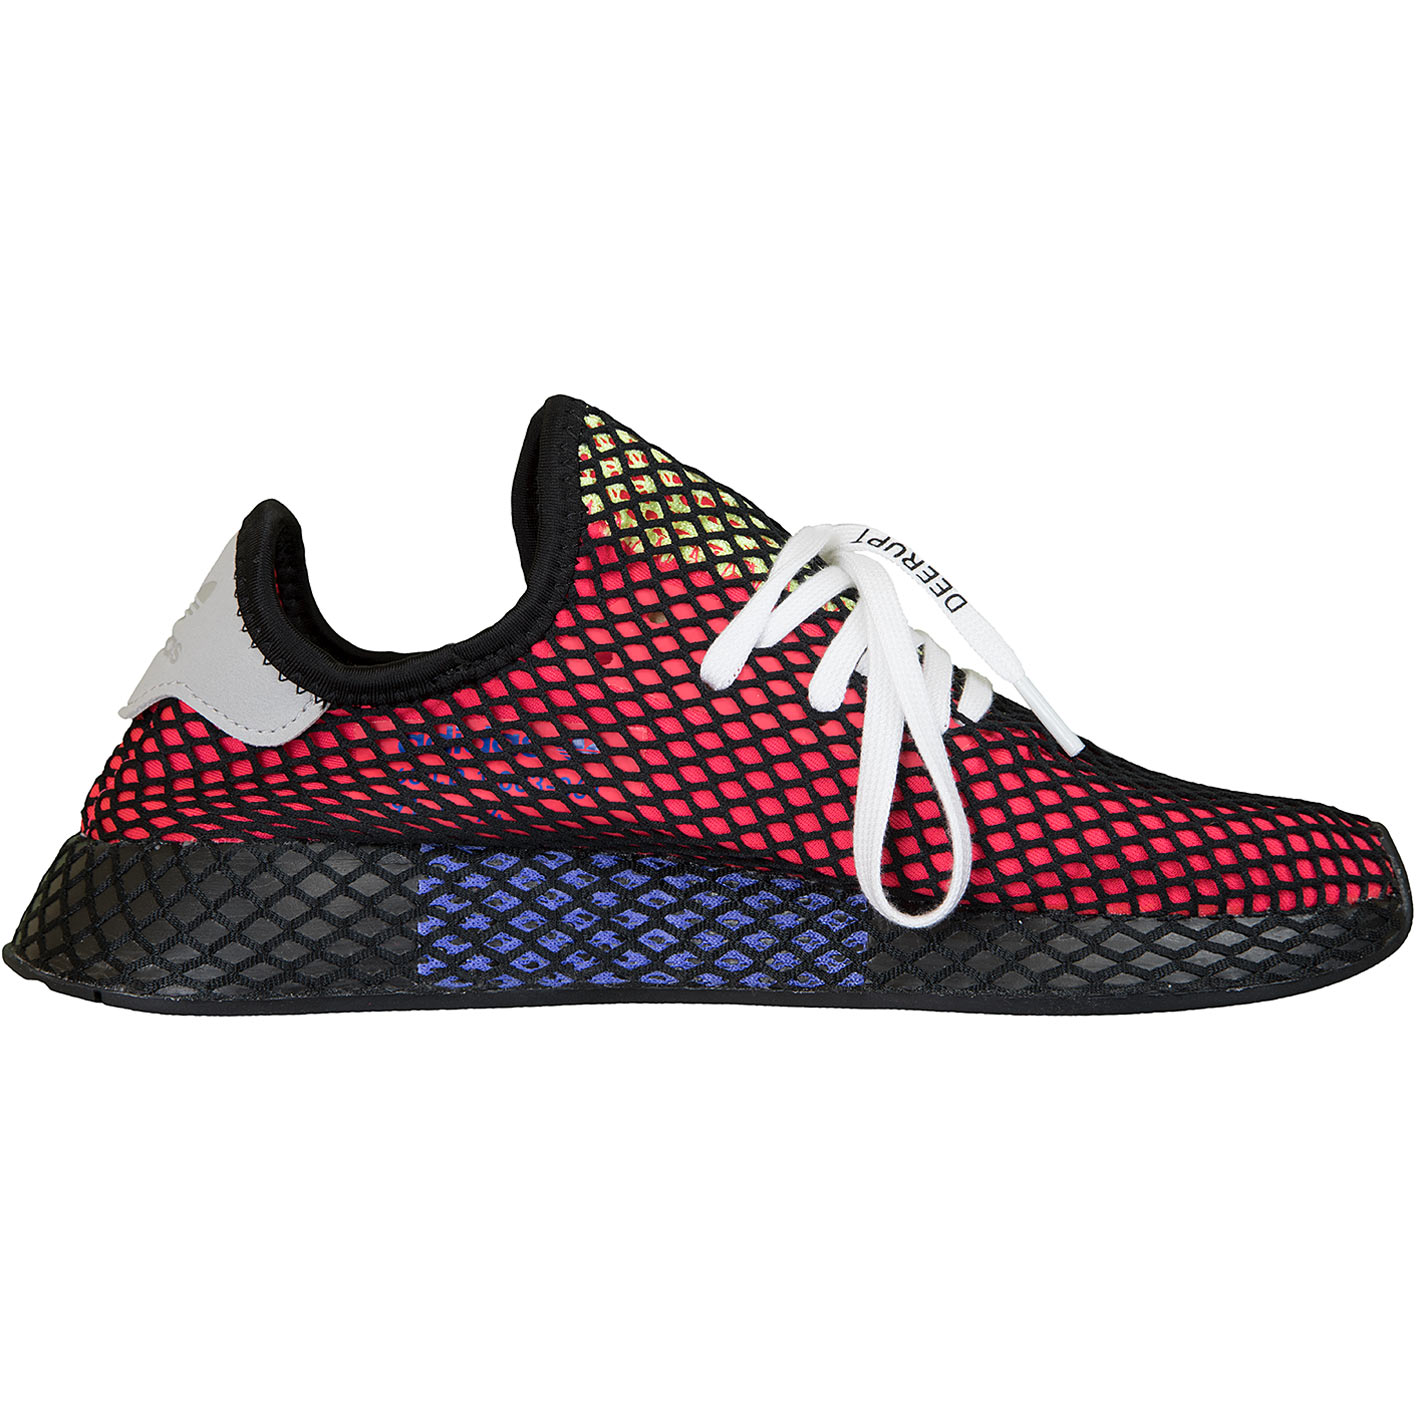 ☆ Adidas Originals Sneaker Deerupt Runner rot/schwarz - hier bestellen!